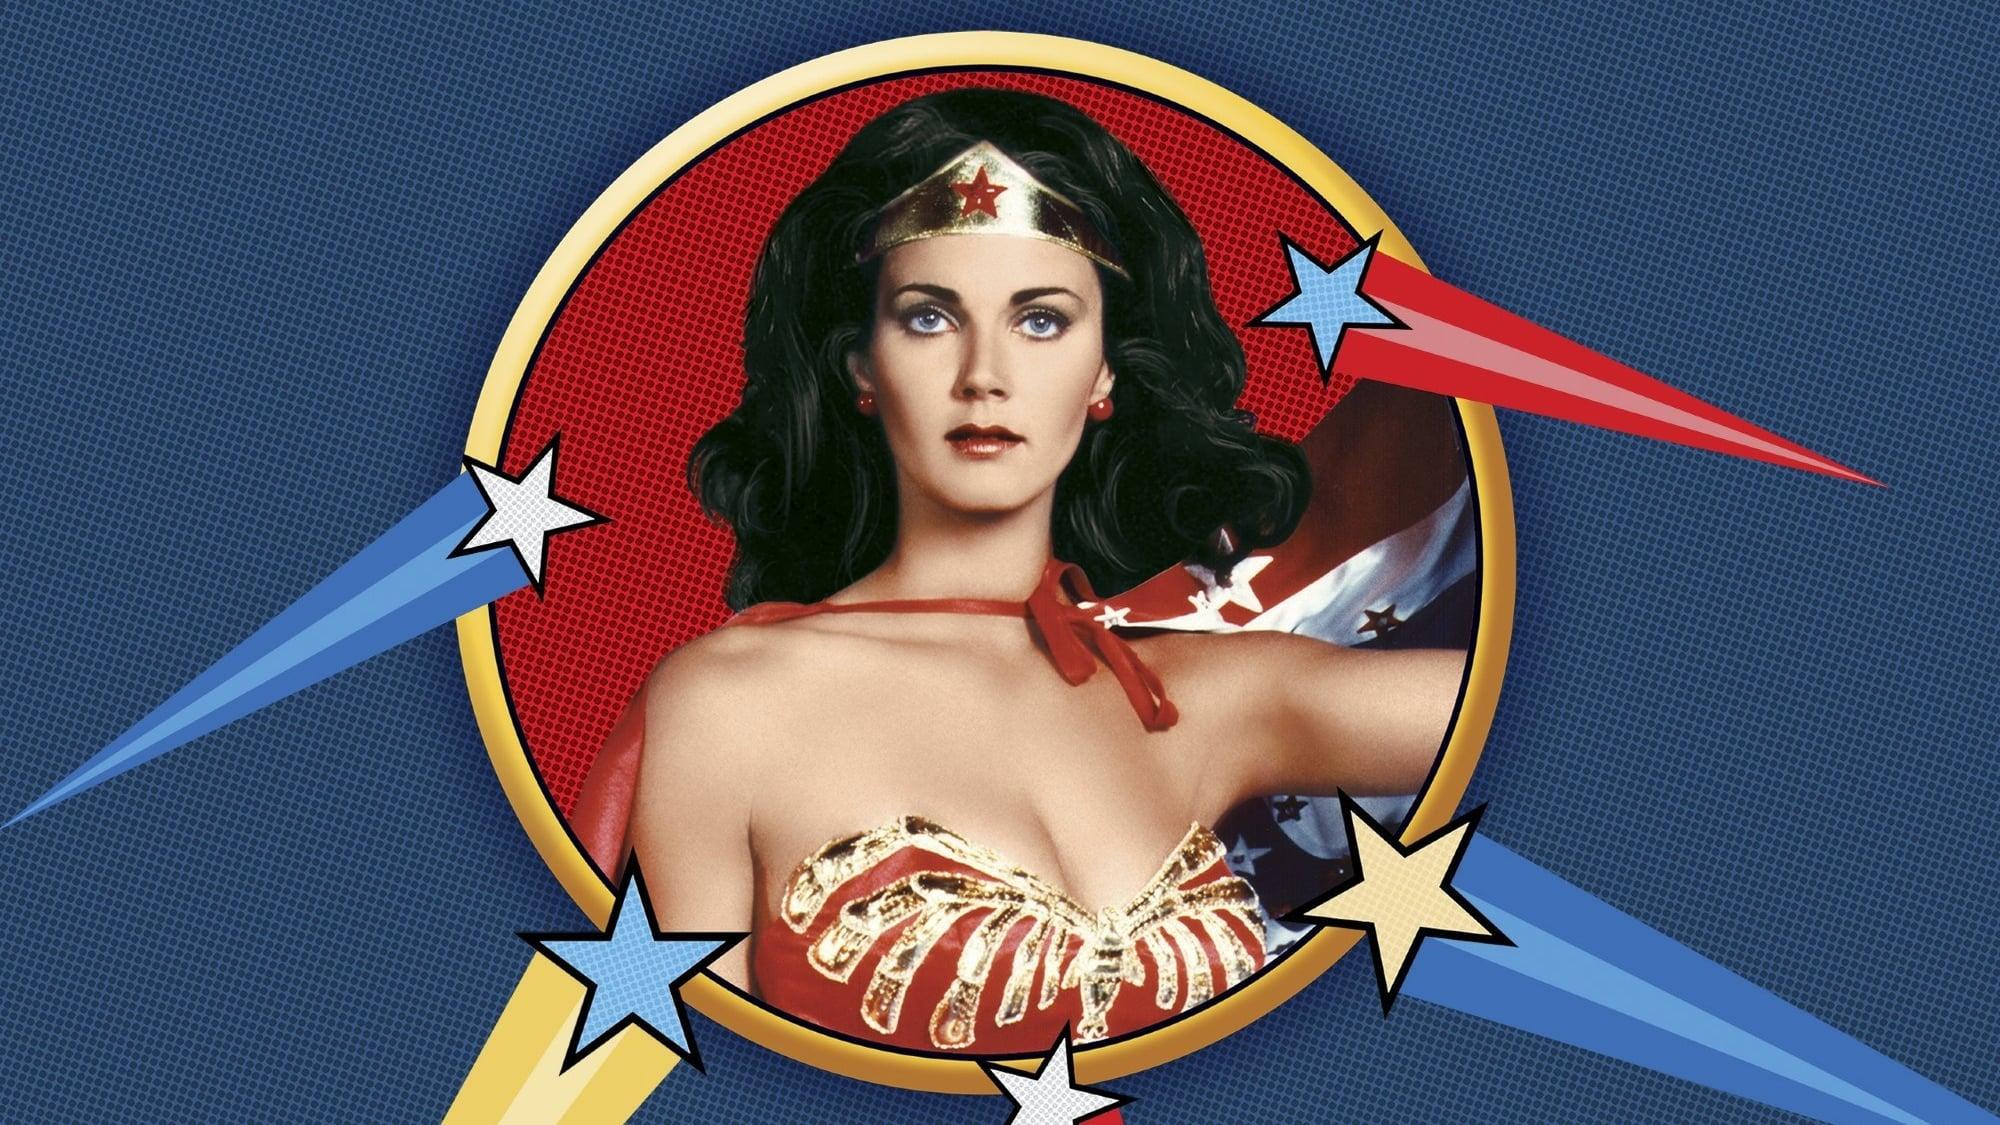 Wonder Woman backdrop